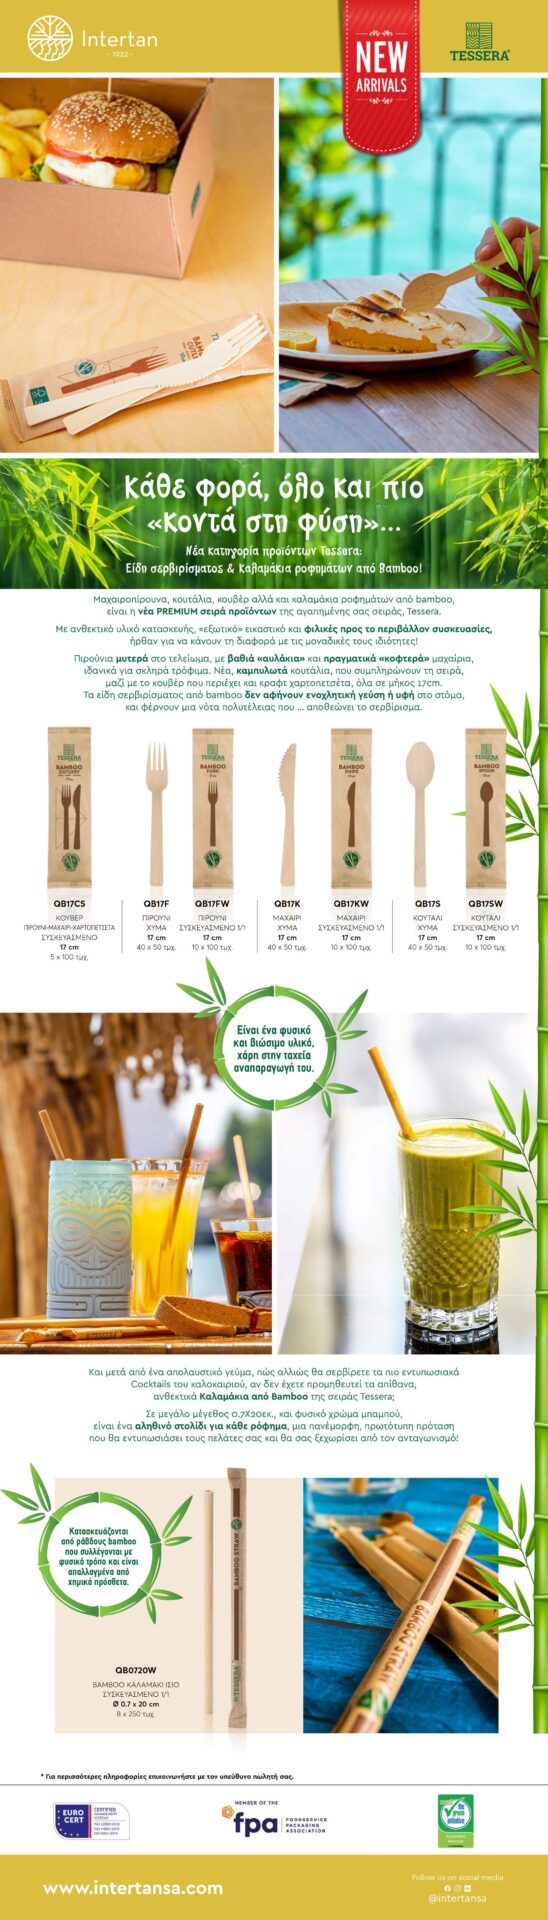 Νέα Premium Καλαμάκια & Μαχαιροπίρουνα από Bamboo Newsletter | ΙΝΤΕΡΤΑΝ Α.Ε.